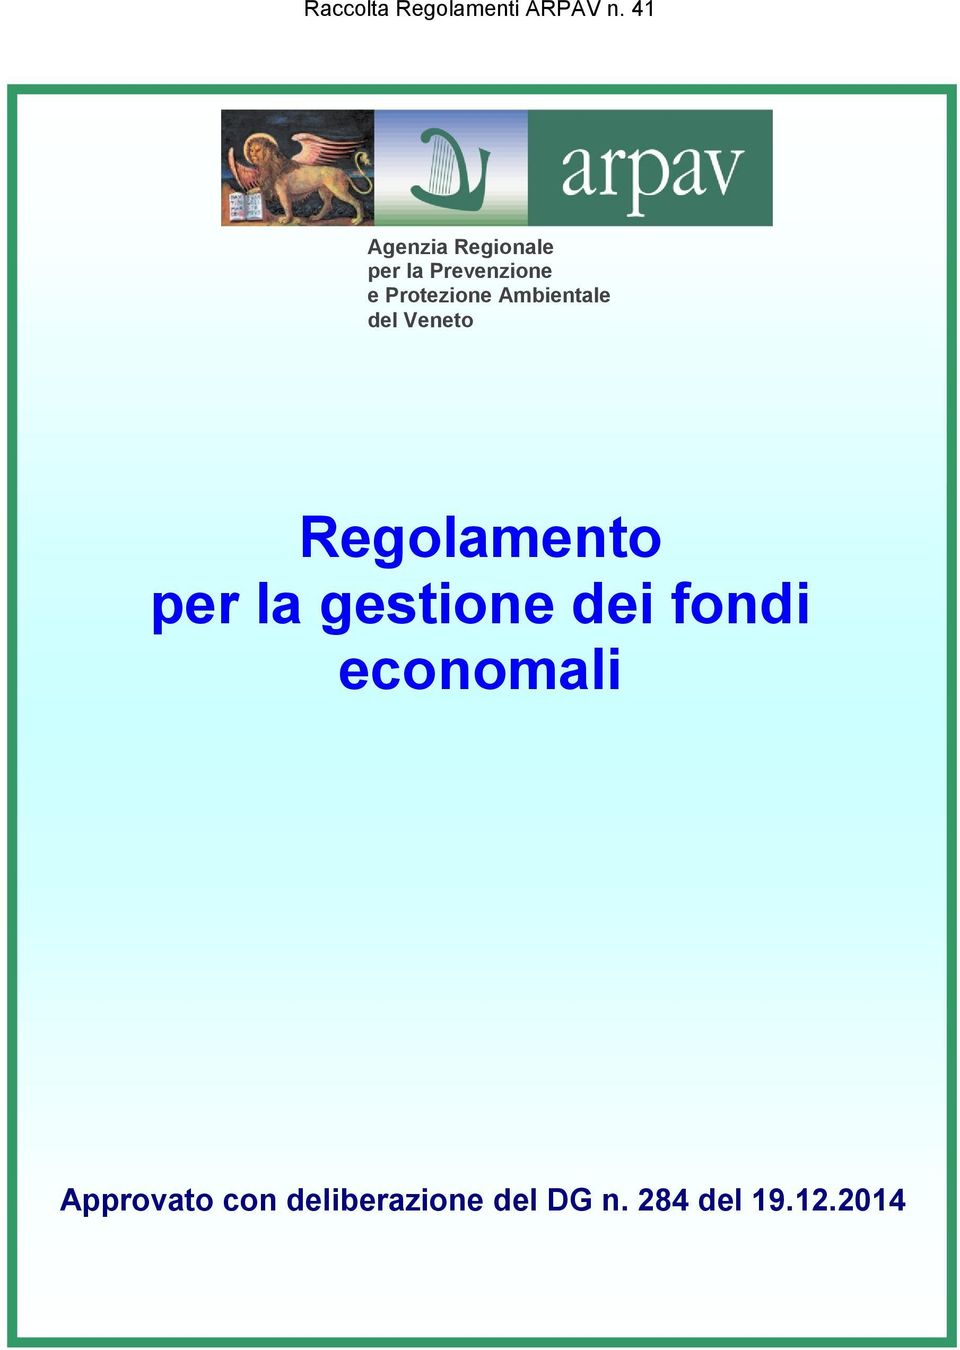 Ambientale del Veneto Regolamento per la gestione